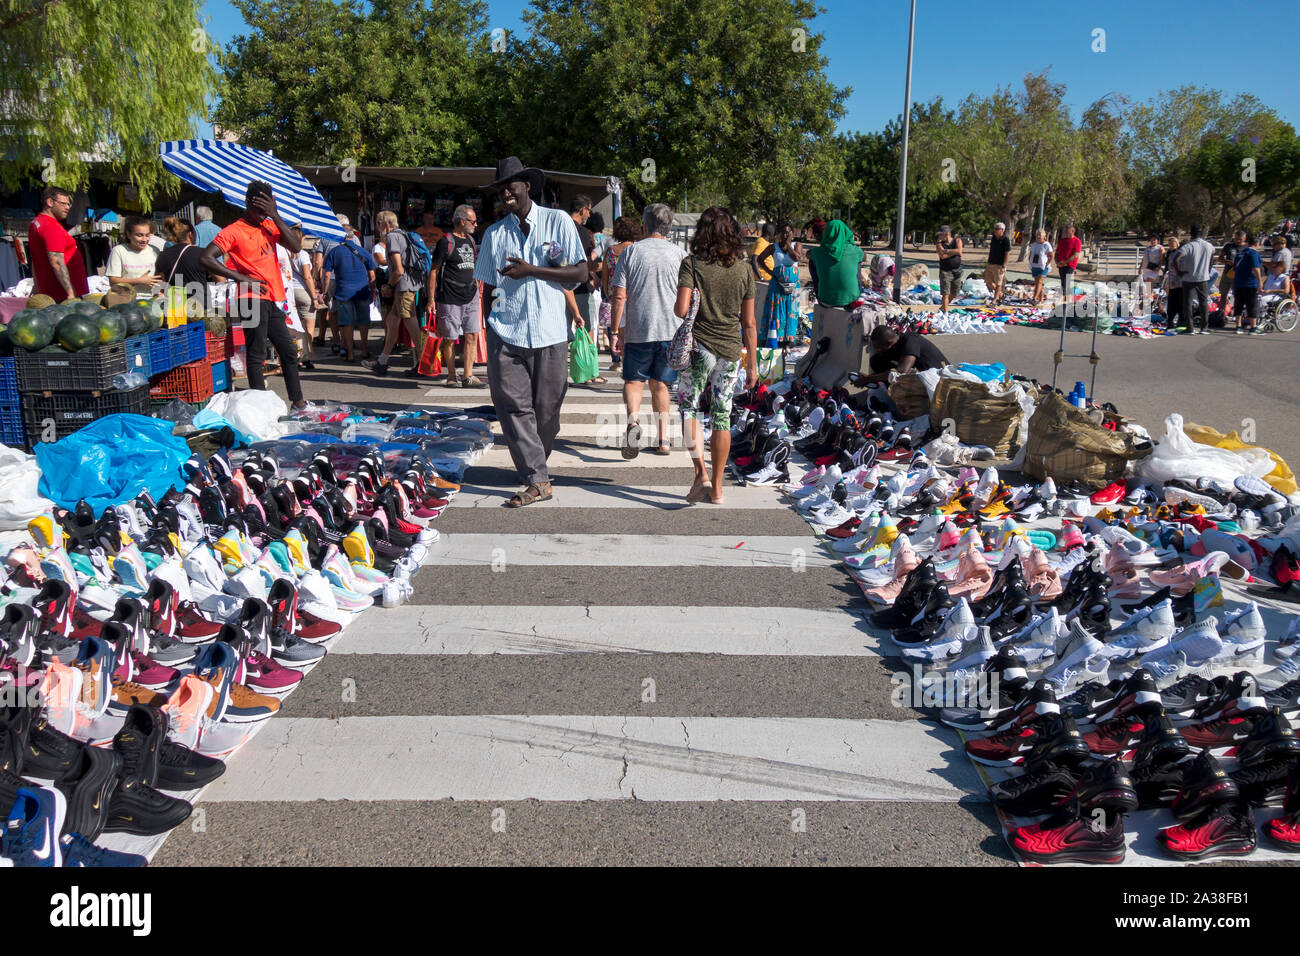 L'Hospitalet, Spagna - 08 Settembre 2019: mercato illegale di falsi di scarpe sportive, contraffatti in strada i cosiddetti top manta Foto Stock